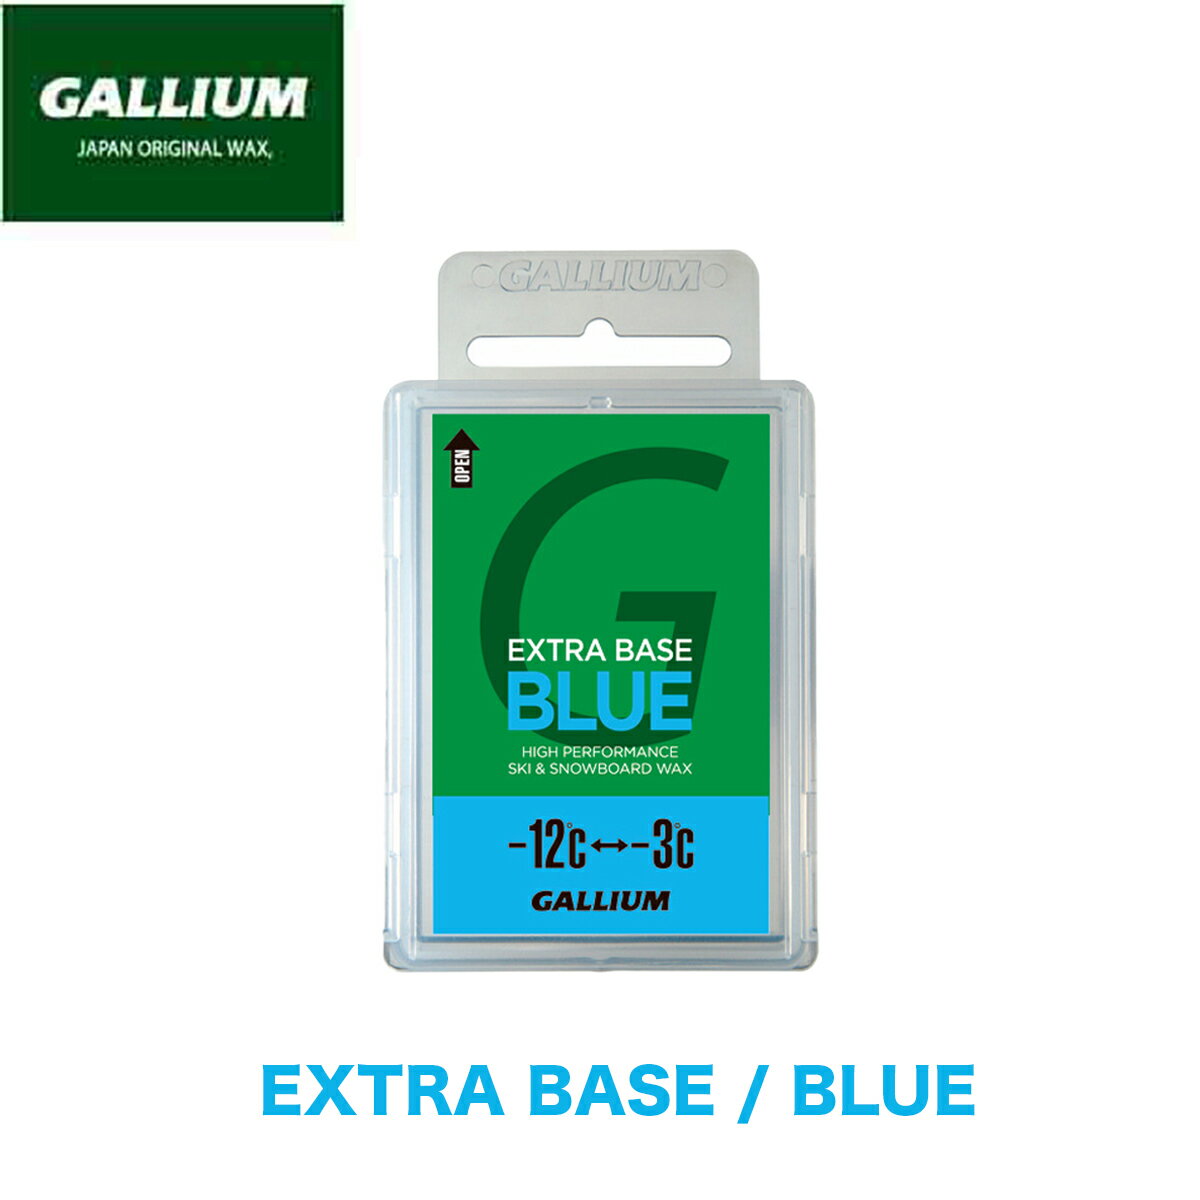 ガリウム ワックス GALLIUM EXTRA BASE BLUE 100g パラフィンワックス チューンナップ チューンアップ スキー スノボ スノーボード ベースワックス メンテナンス WAX 固形 ツール ブルー SW2074 正規品